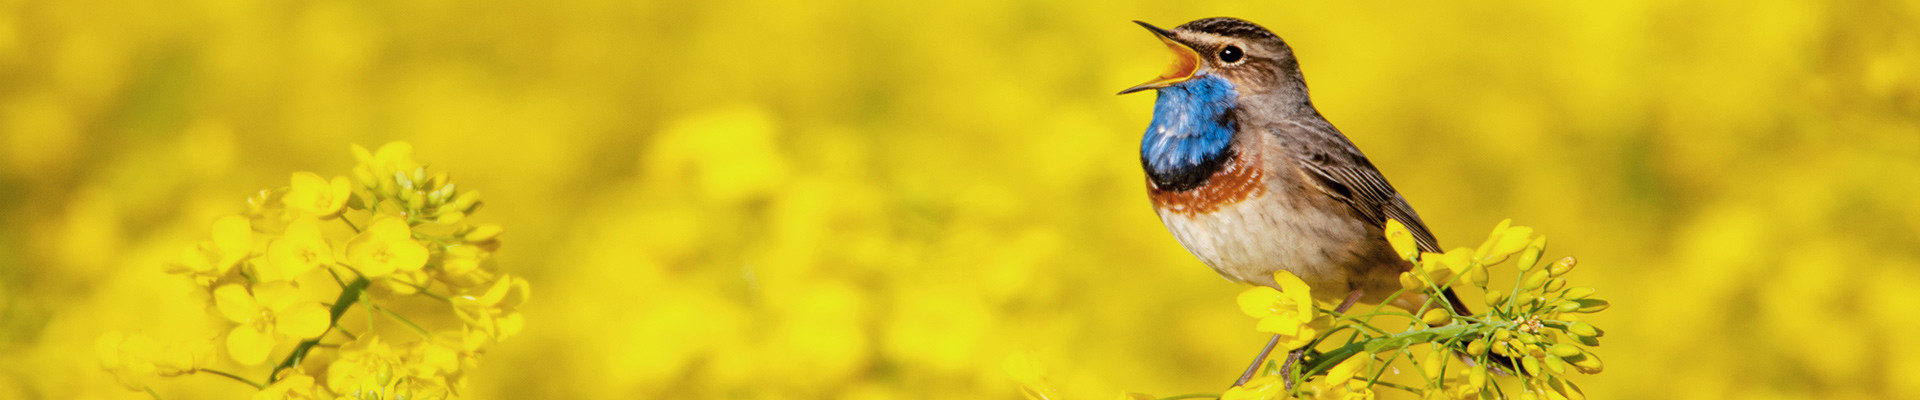 Songbird in rapeseed field